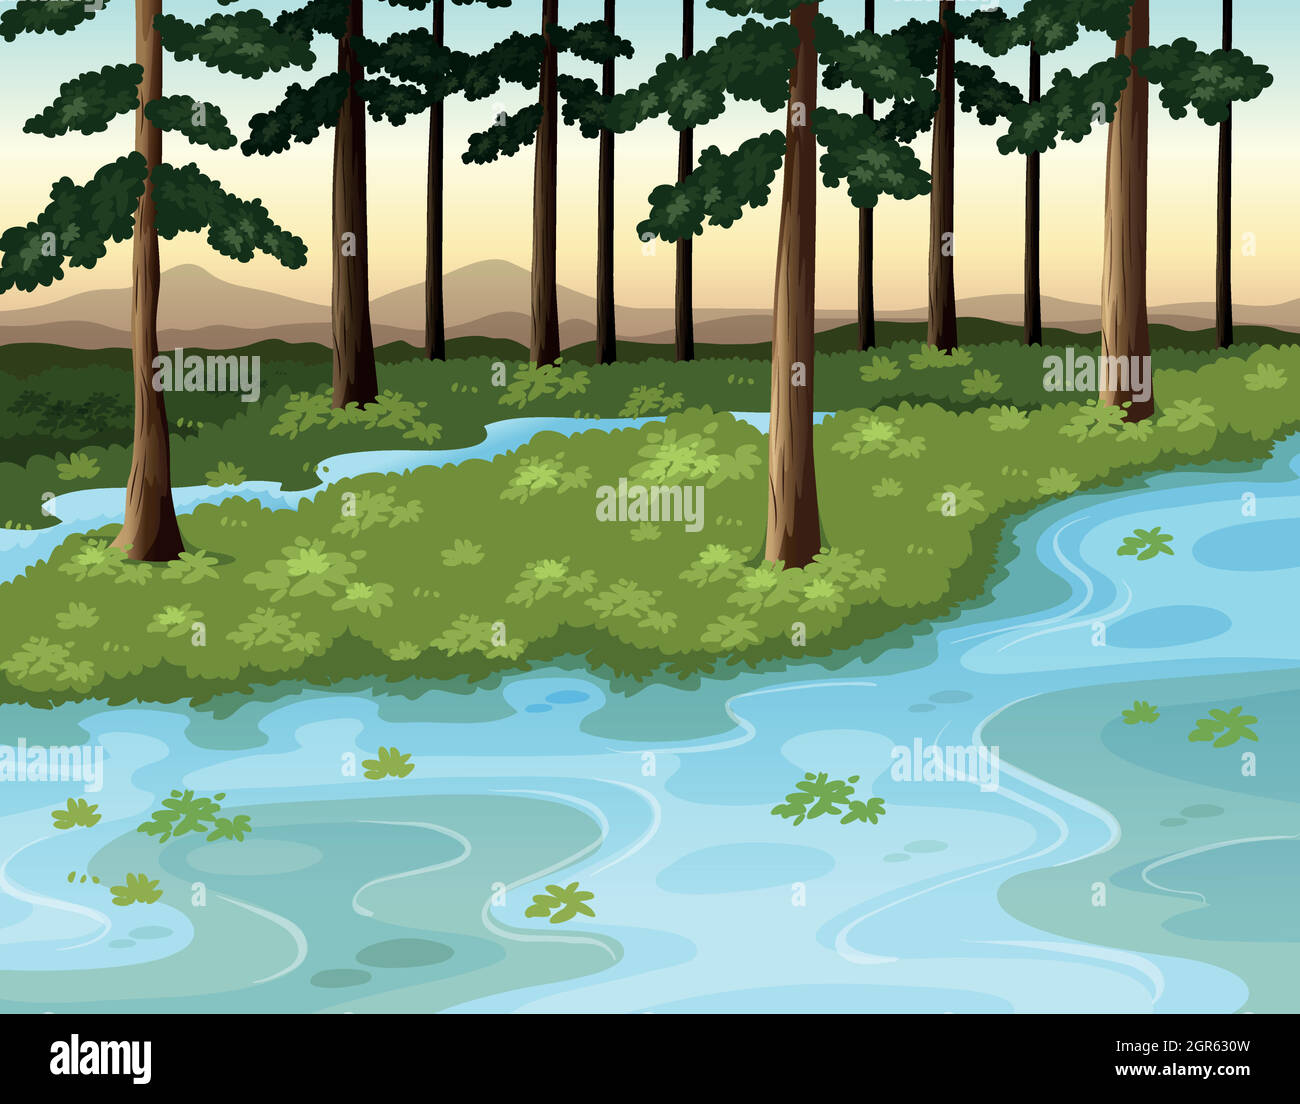 Scène de nature avec forêt et rivière Illustration de Vecteur